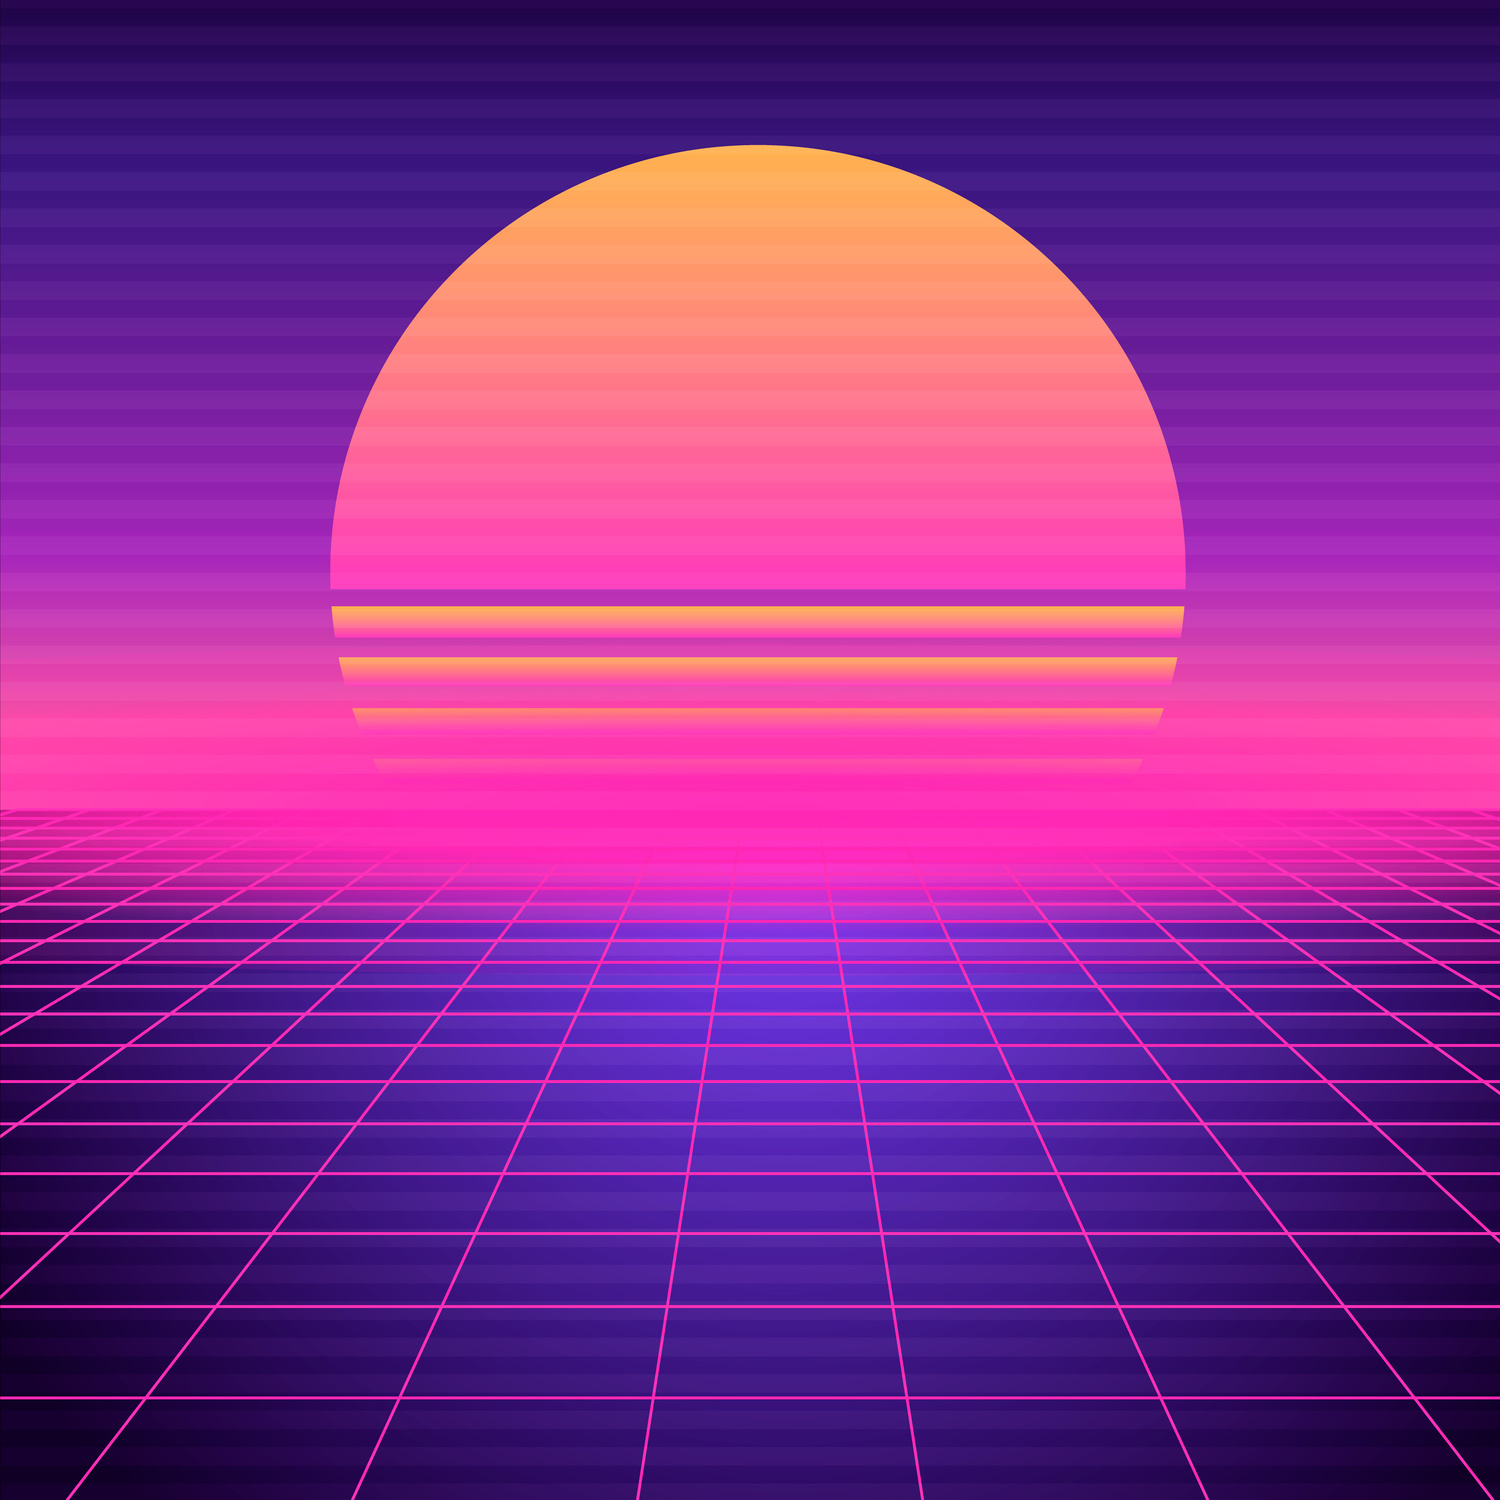 Retro futuristic background vaporwave